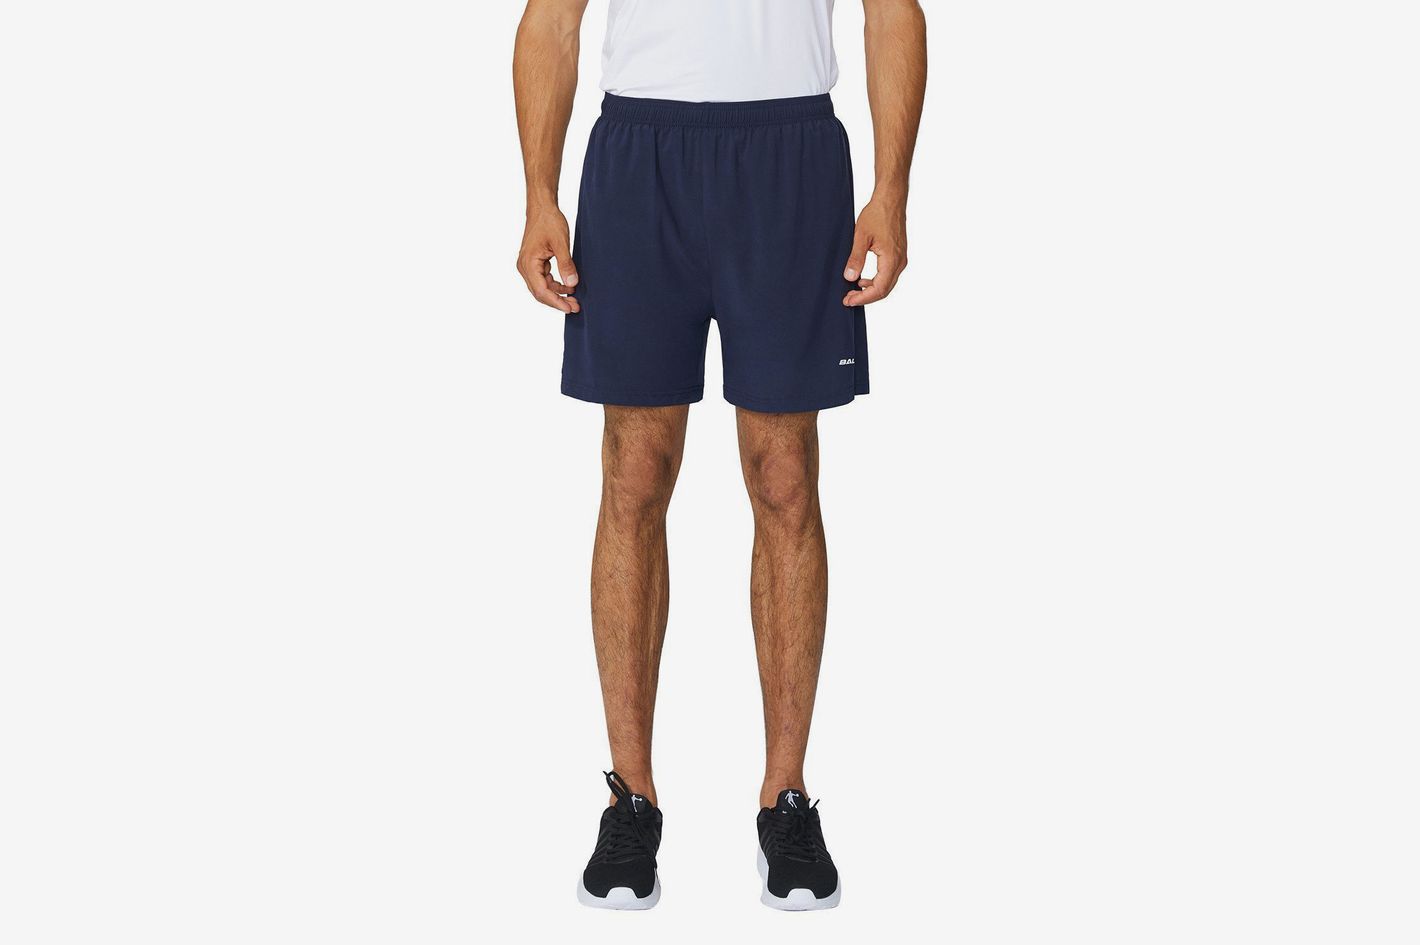 BALEAF Mens 7 Athletic Running Shorts Quick Dry Mesh Liner Back Zip Pocket